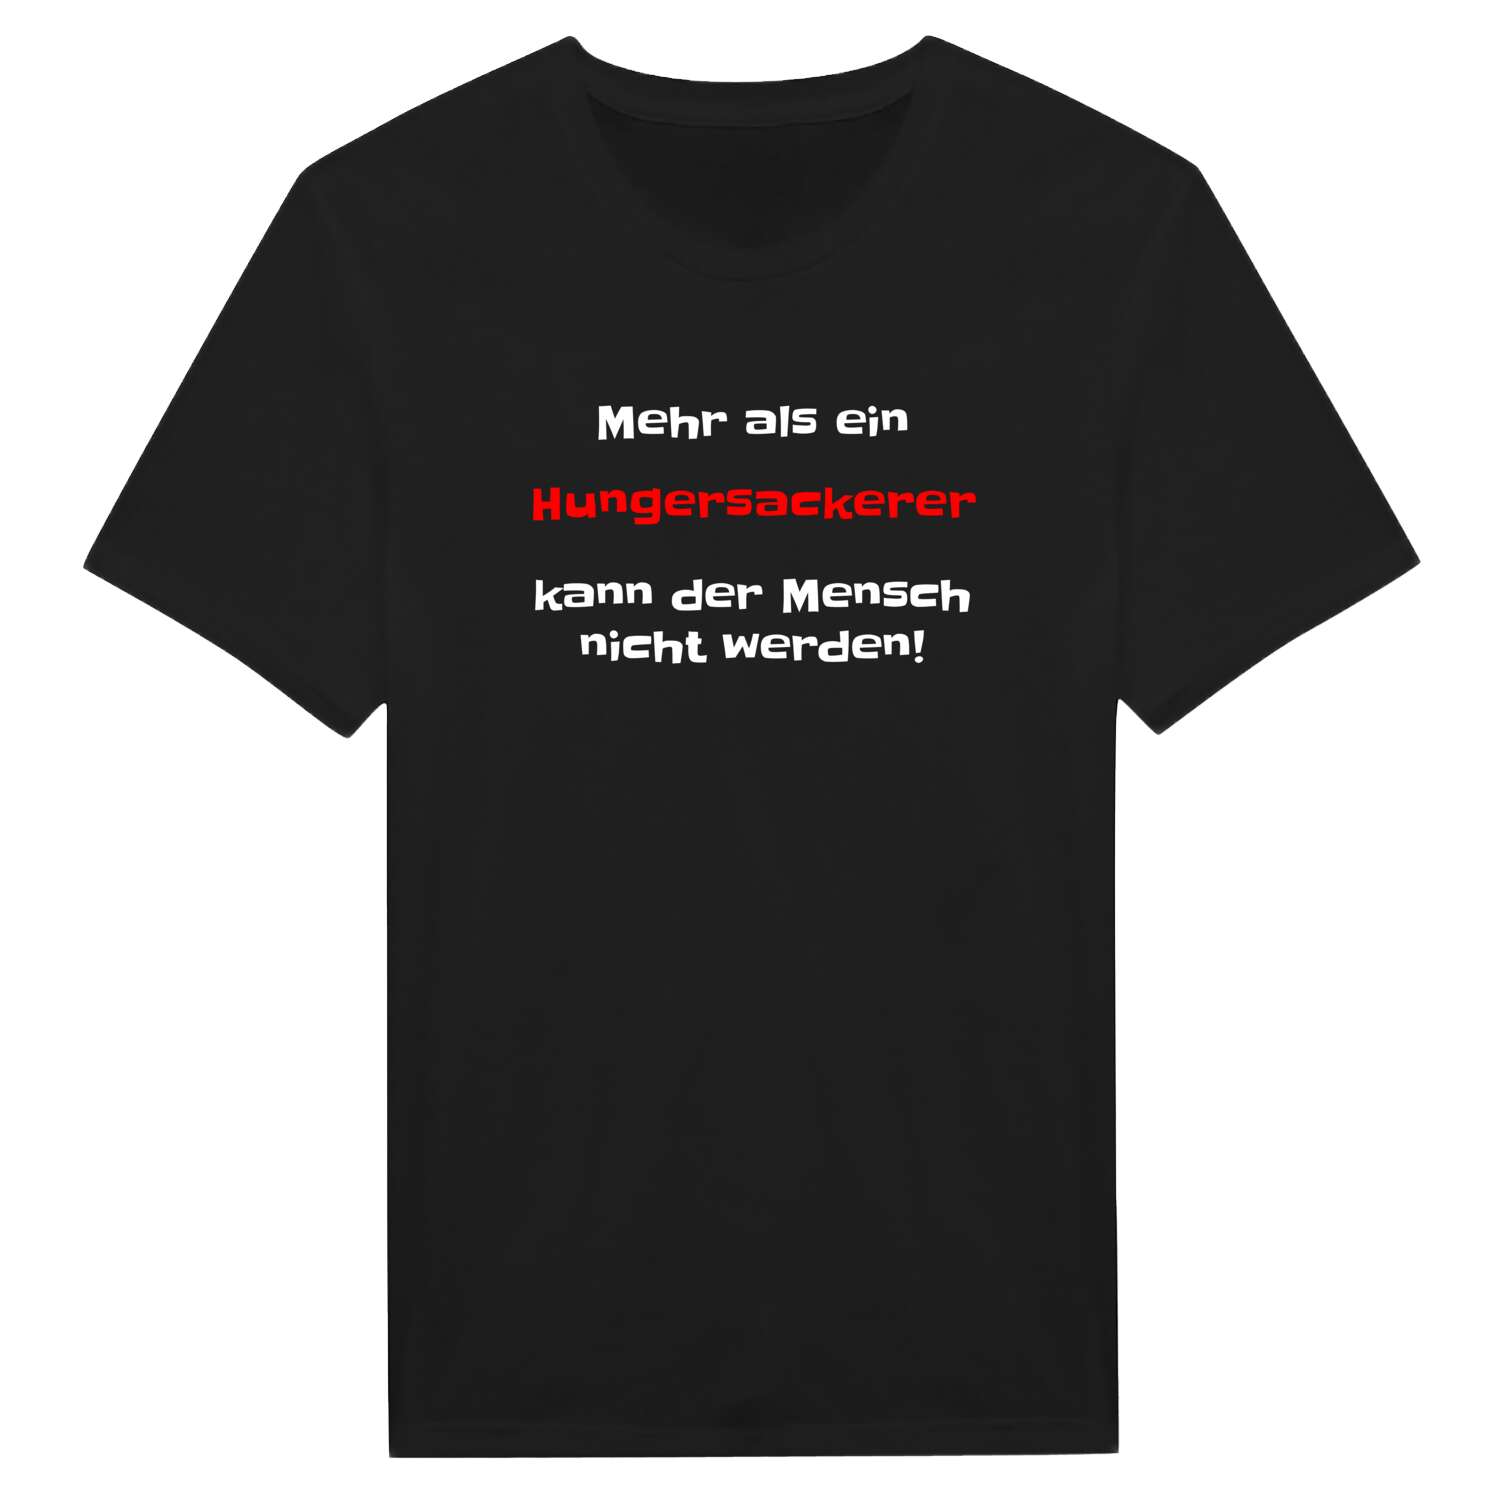 Hungersacker T-Shirt »Mehr als ein«